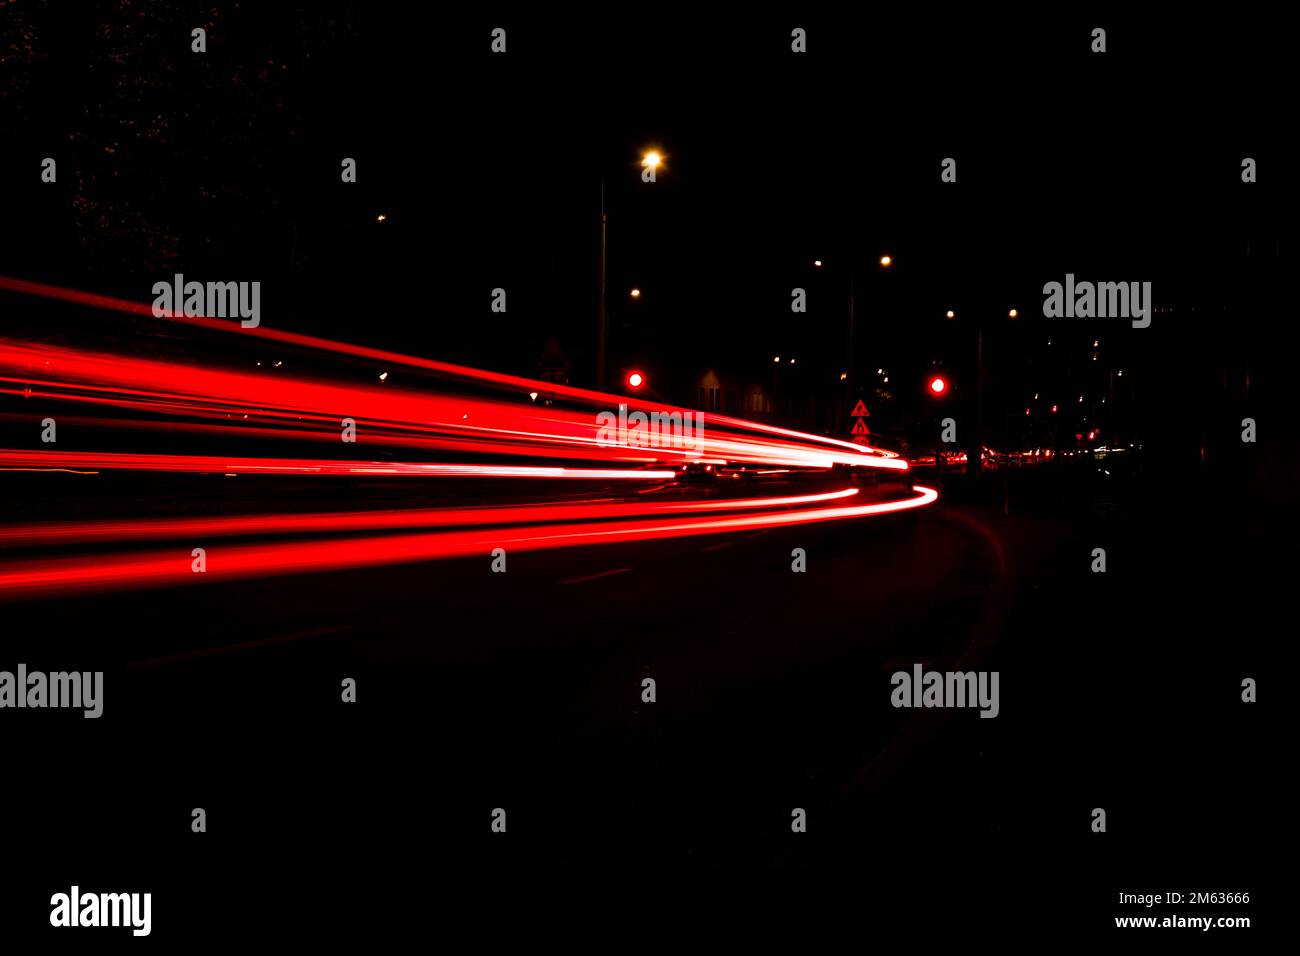 https://c8.alamy.com/compes/2m63666/luces-de-los-coches-por-la-noche-luces-de-la-linea-de-la-calle-ciudad-de-la-autopista-nocturna-fotografia-de-larga-exposicion-en-carretera-nocturna-bandas-de-colores-de-rastros-de-luz-roja-en-la-carretera-fondo-de-pantalla-foto-desenfocada-2m63666.jpg